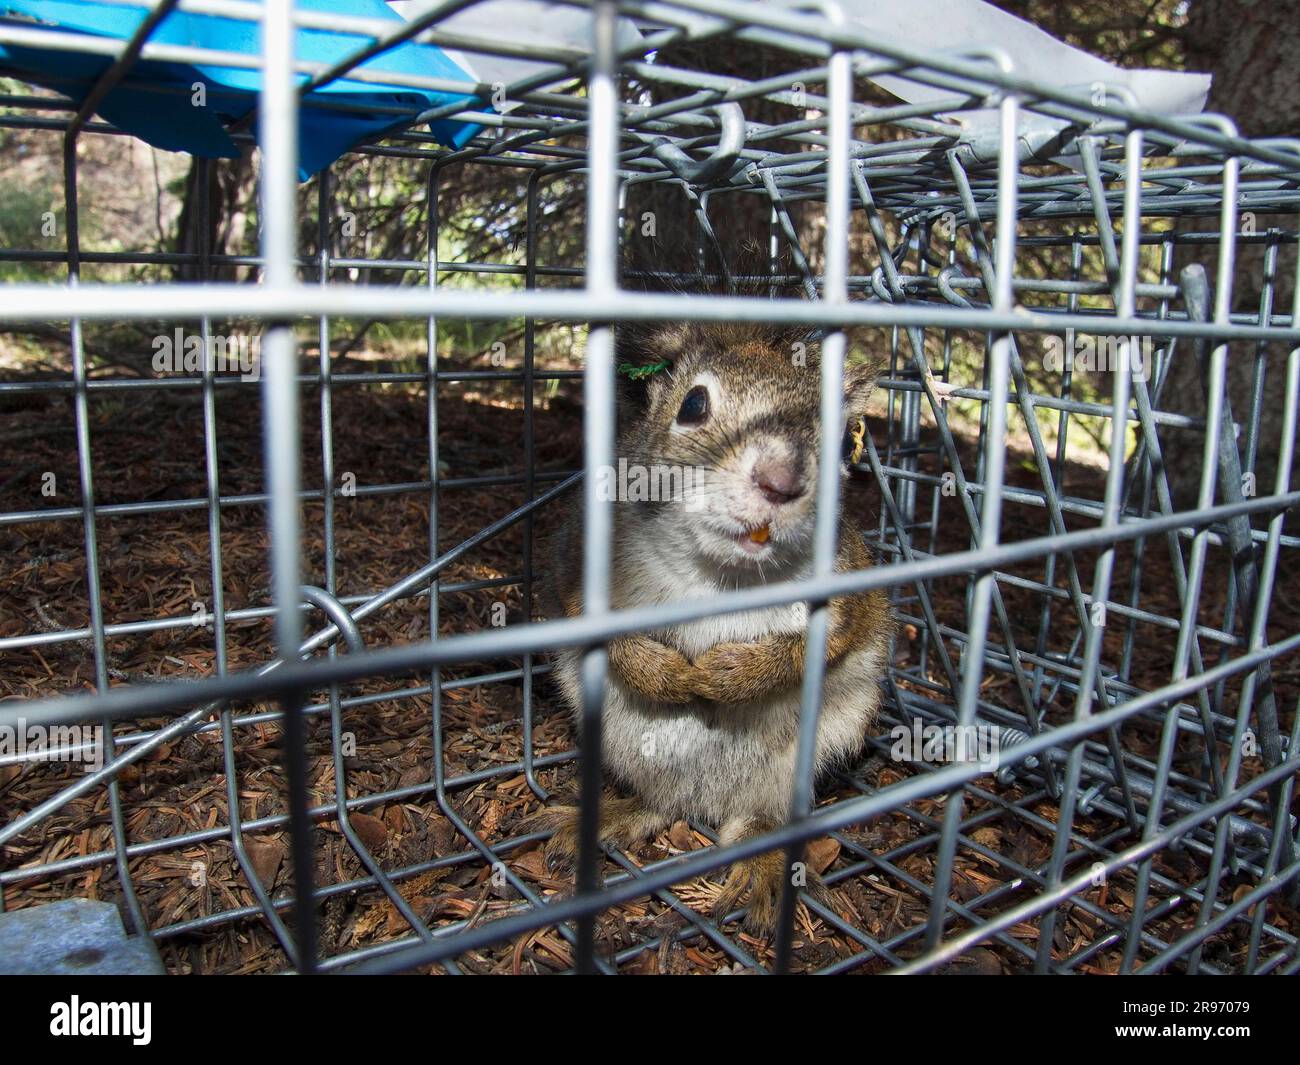 https://c8.alamy.com/comp/2R97079/red-squirrel-in-trap-kluane-national-park-yukon-canada-tamiasciurus-hudsonicus-2R97079.jpg